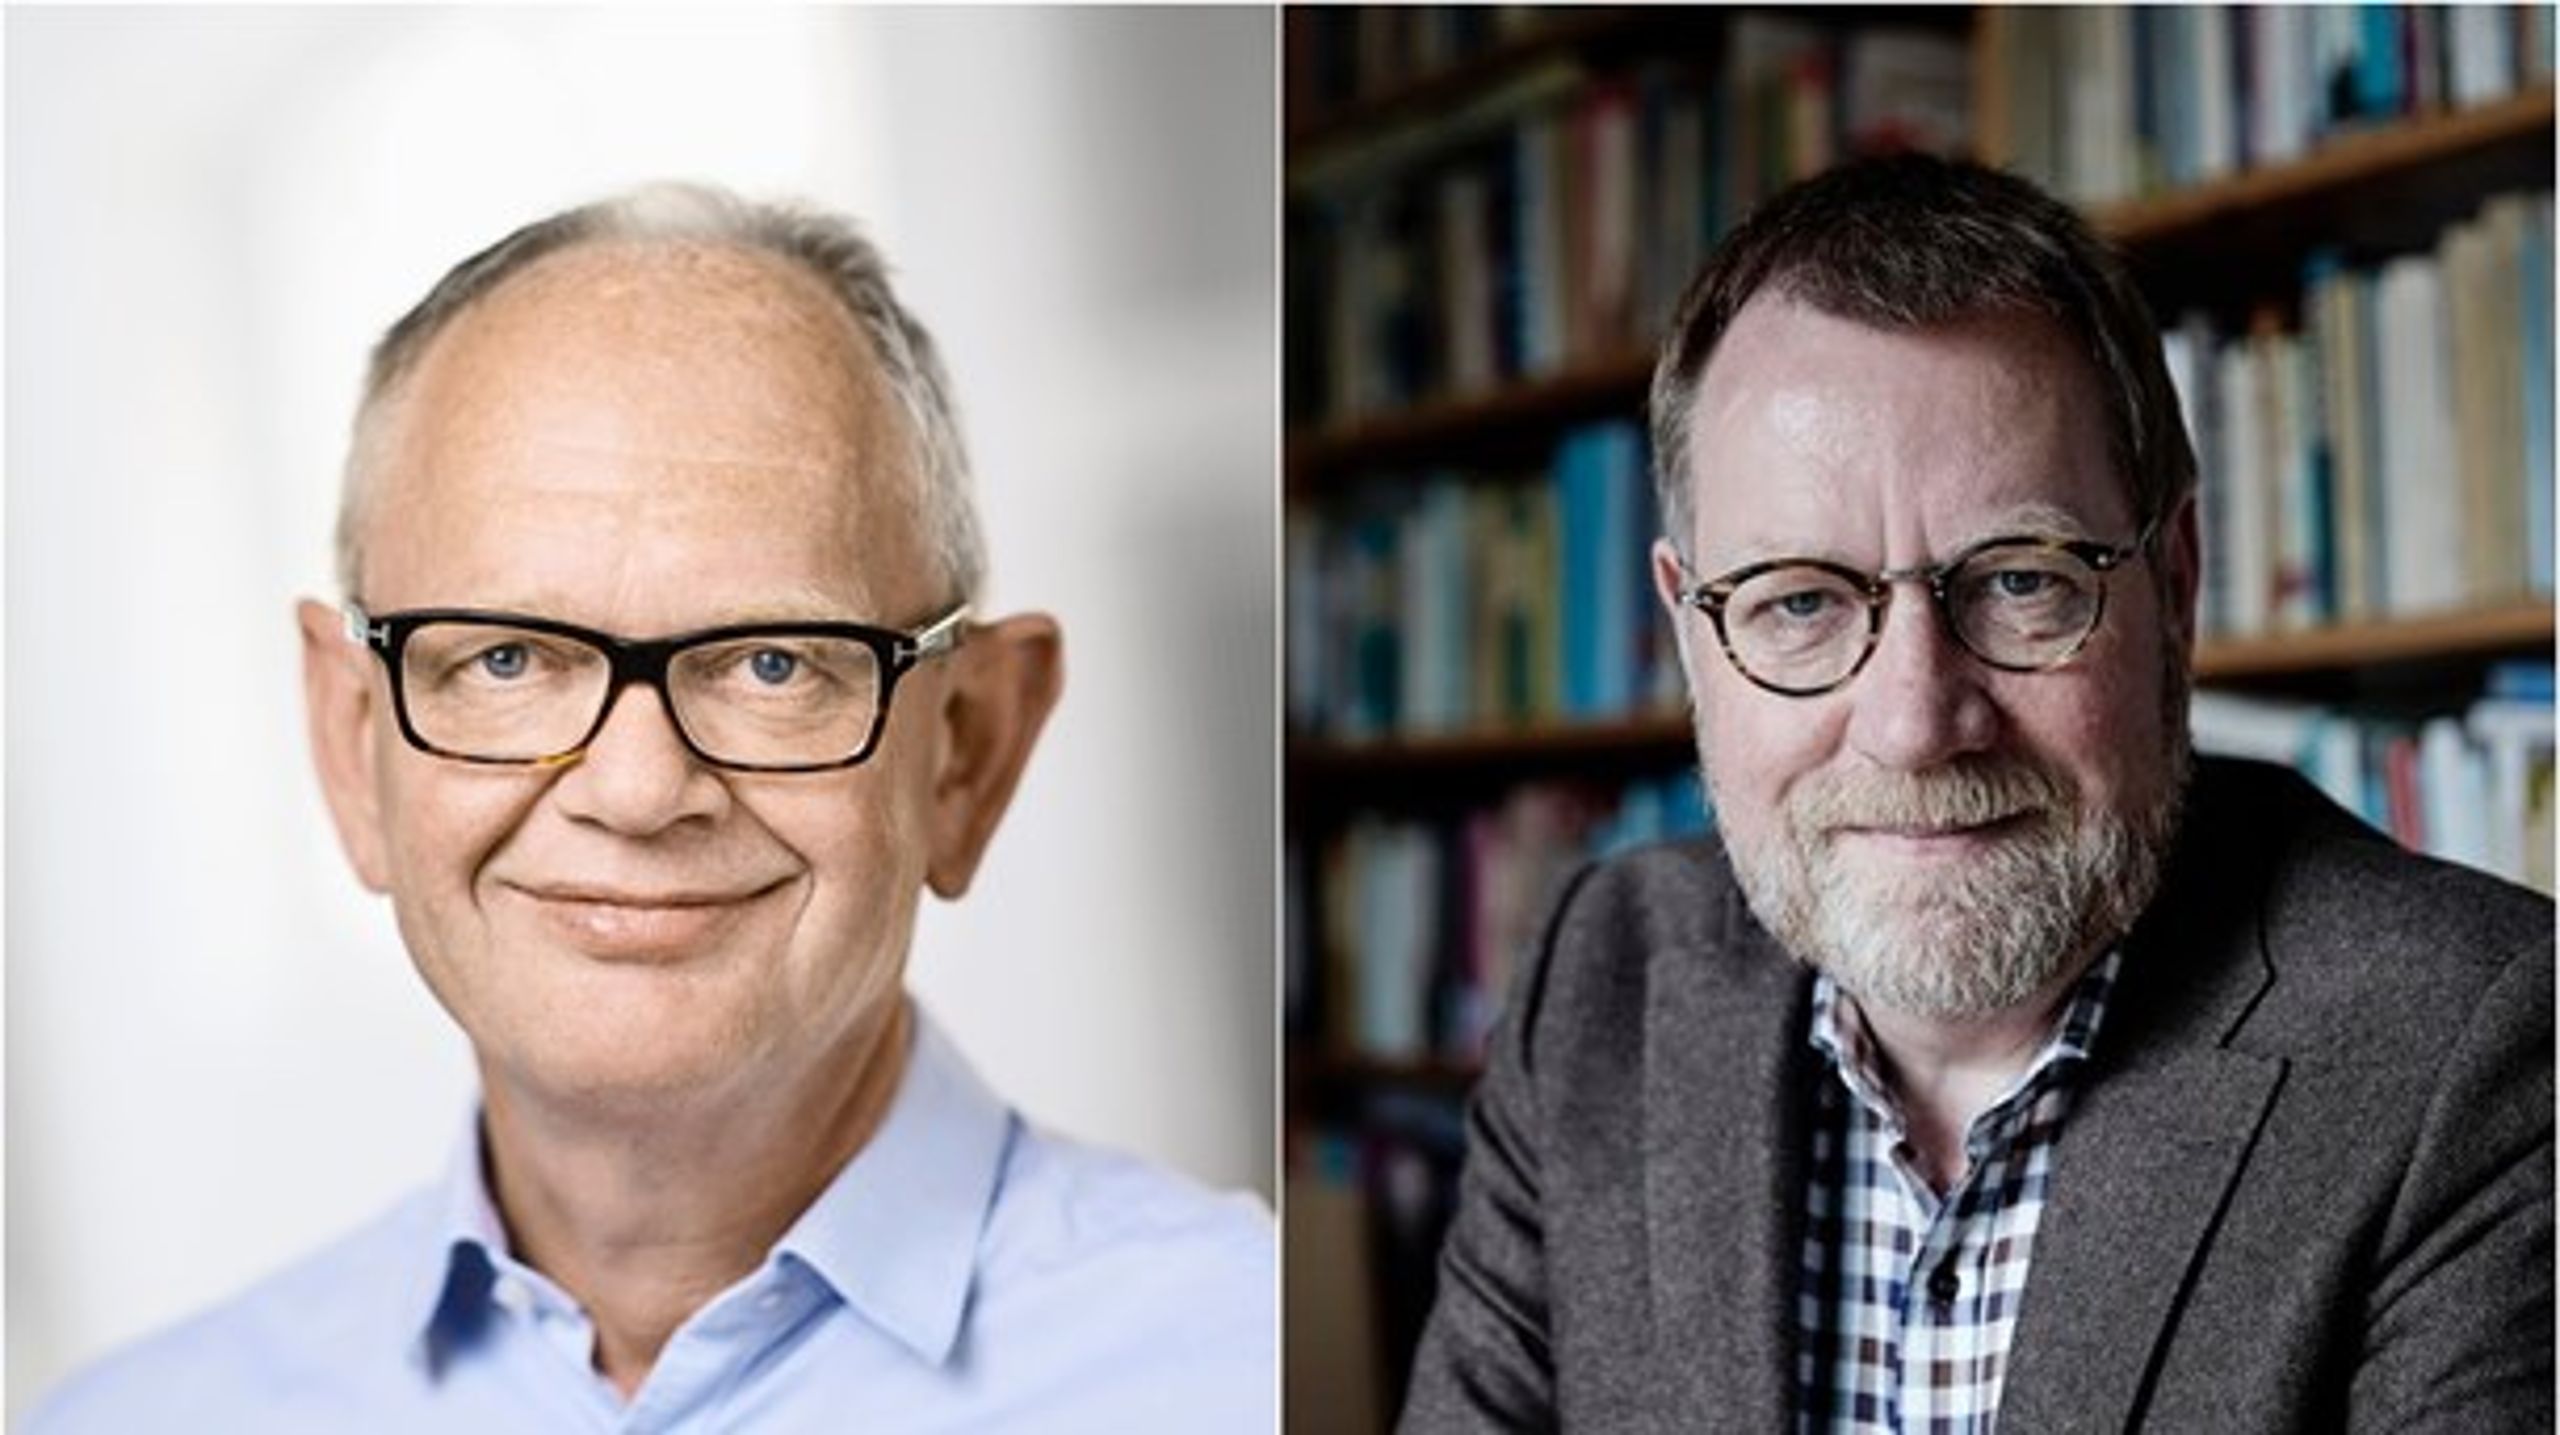 Benny Andersen (venstre) og Knud Aarup glæder sig over, at dagtilbuddene nu får mere velfærd for pengene. Socialområdet skal have en lignende løsning, skriver de.